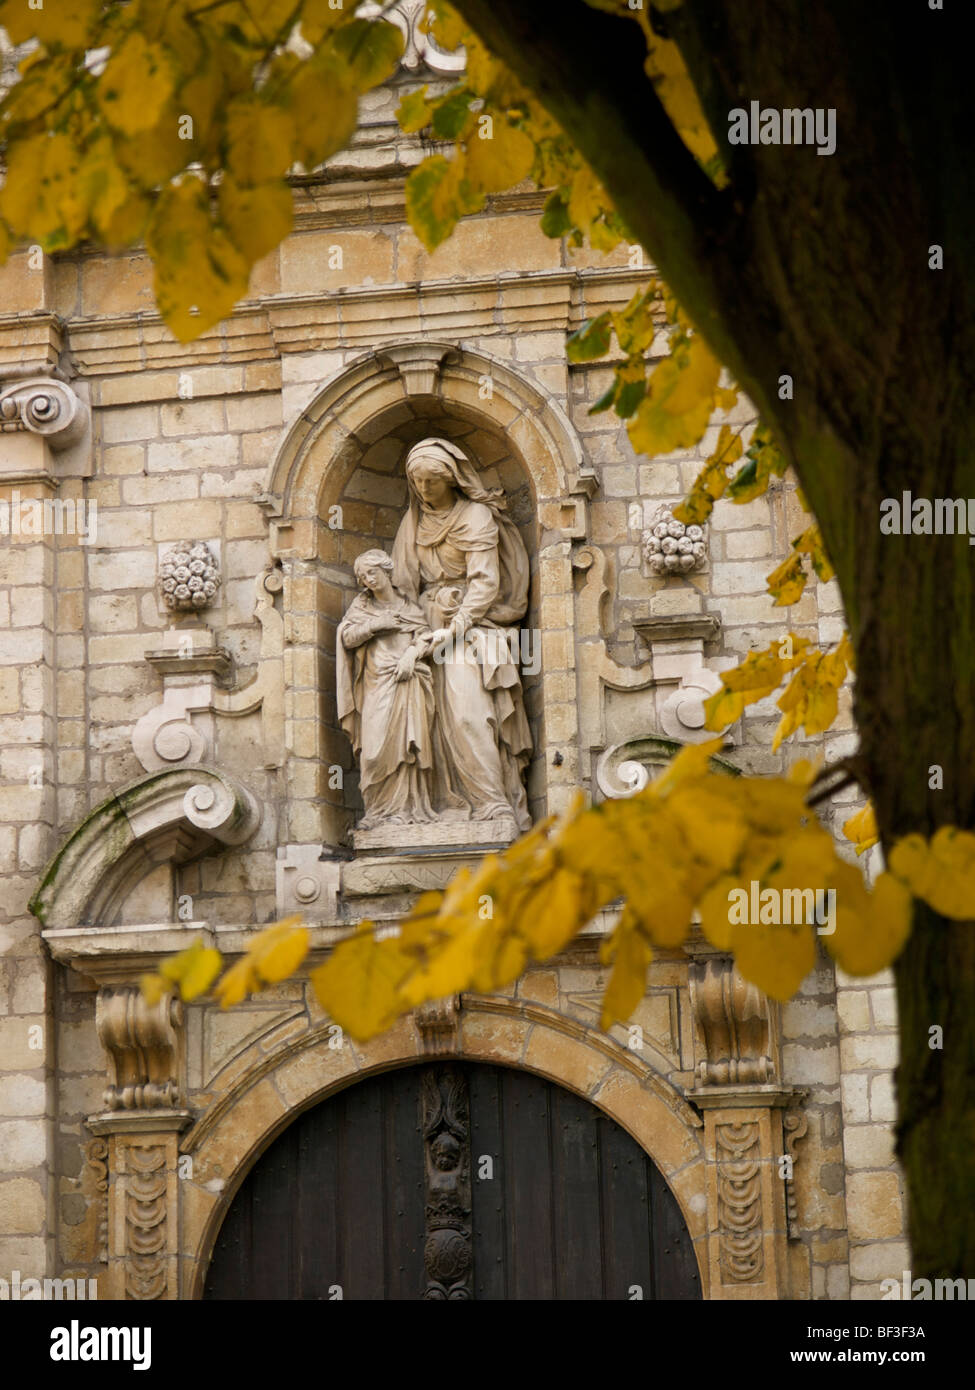 Statue de sainte Anne sur la façade d'une petite chapelle dans le centre-ville de Bruxelles, Belgique Banque D'Images